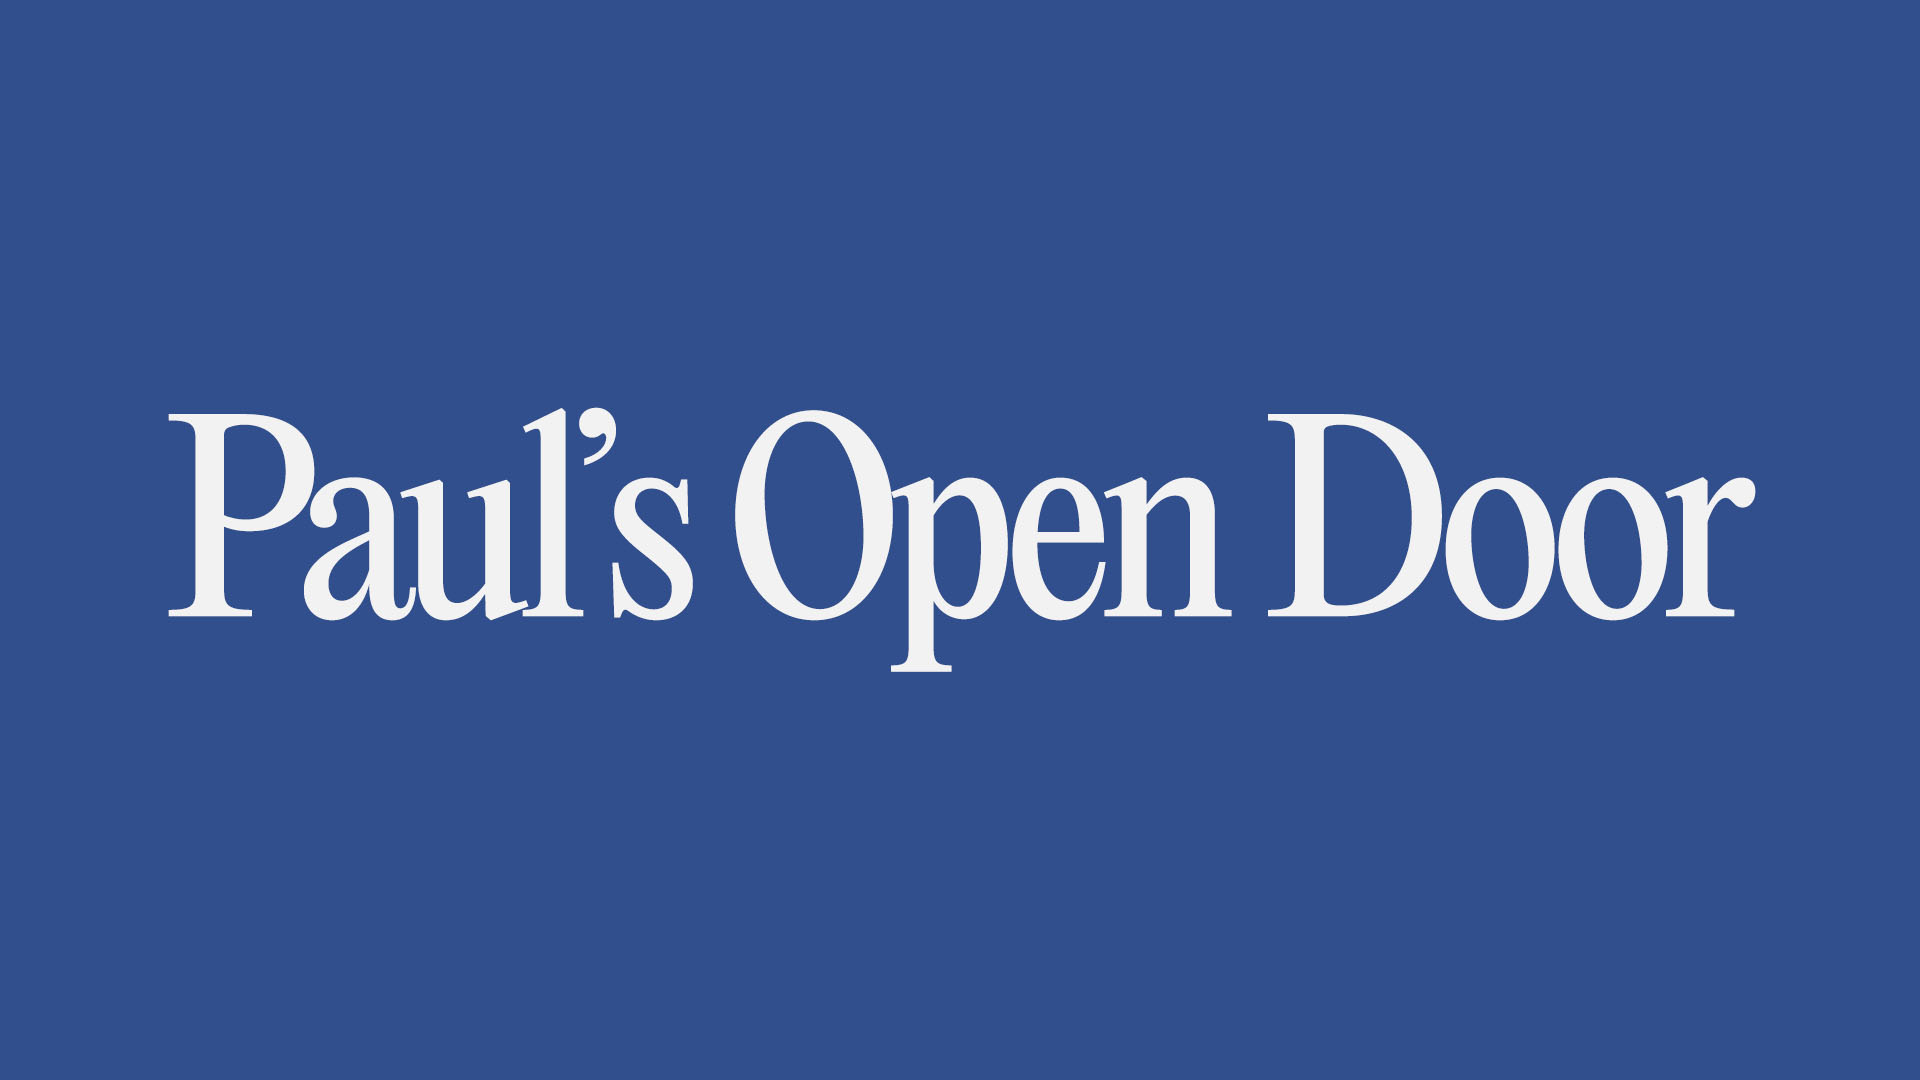 Paul's Open Door Image